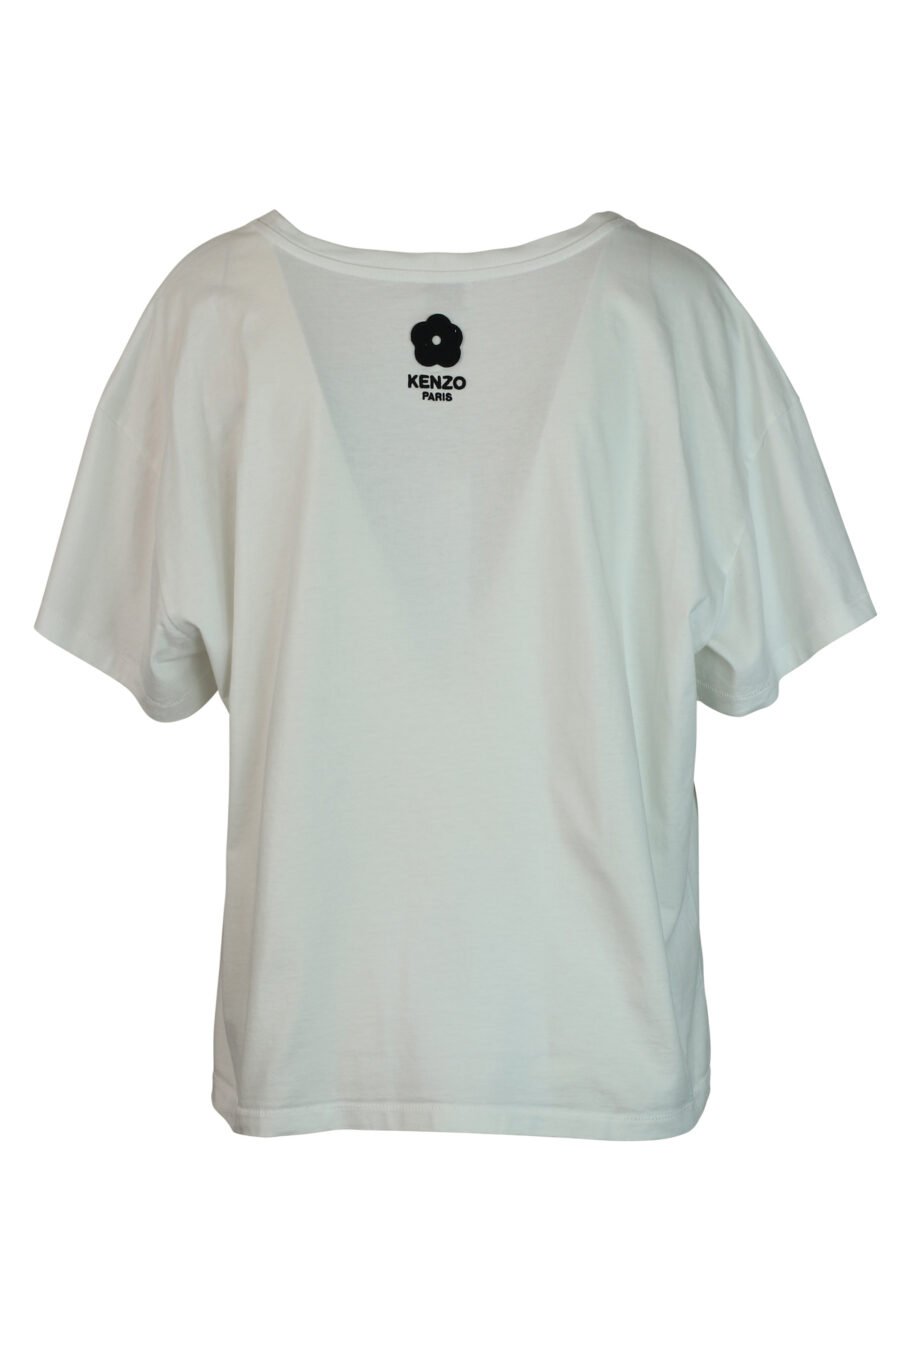 Weißes T-Shirt mit Elefanten-Maxilogo - 3612230460119 2